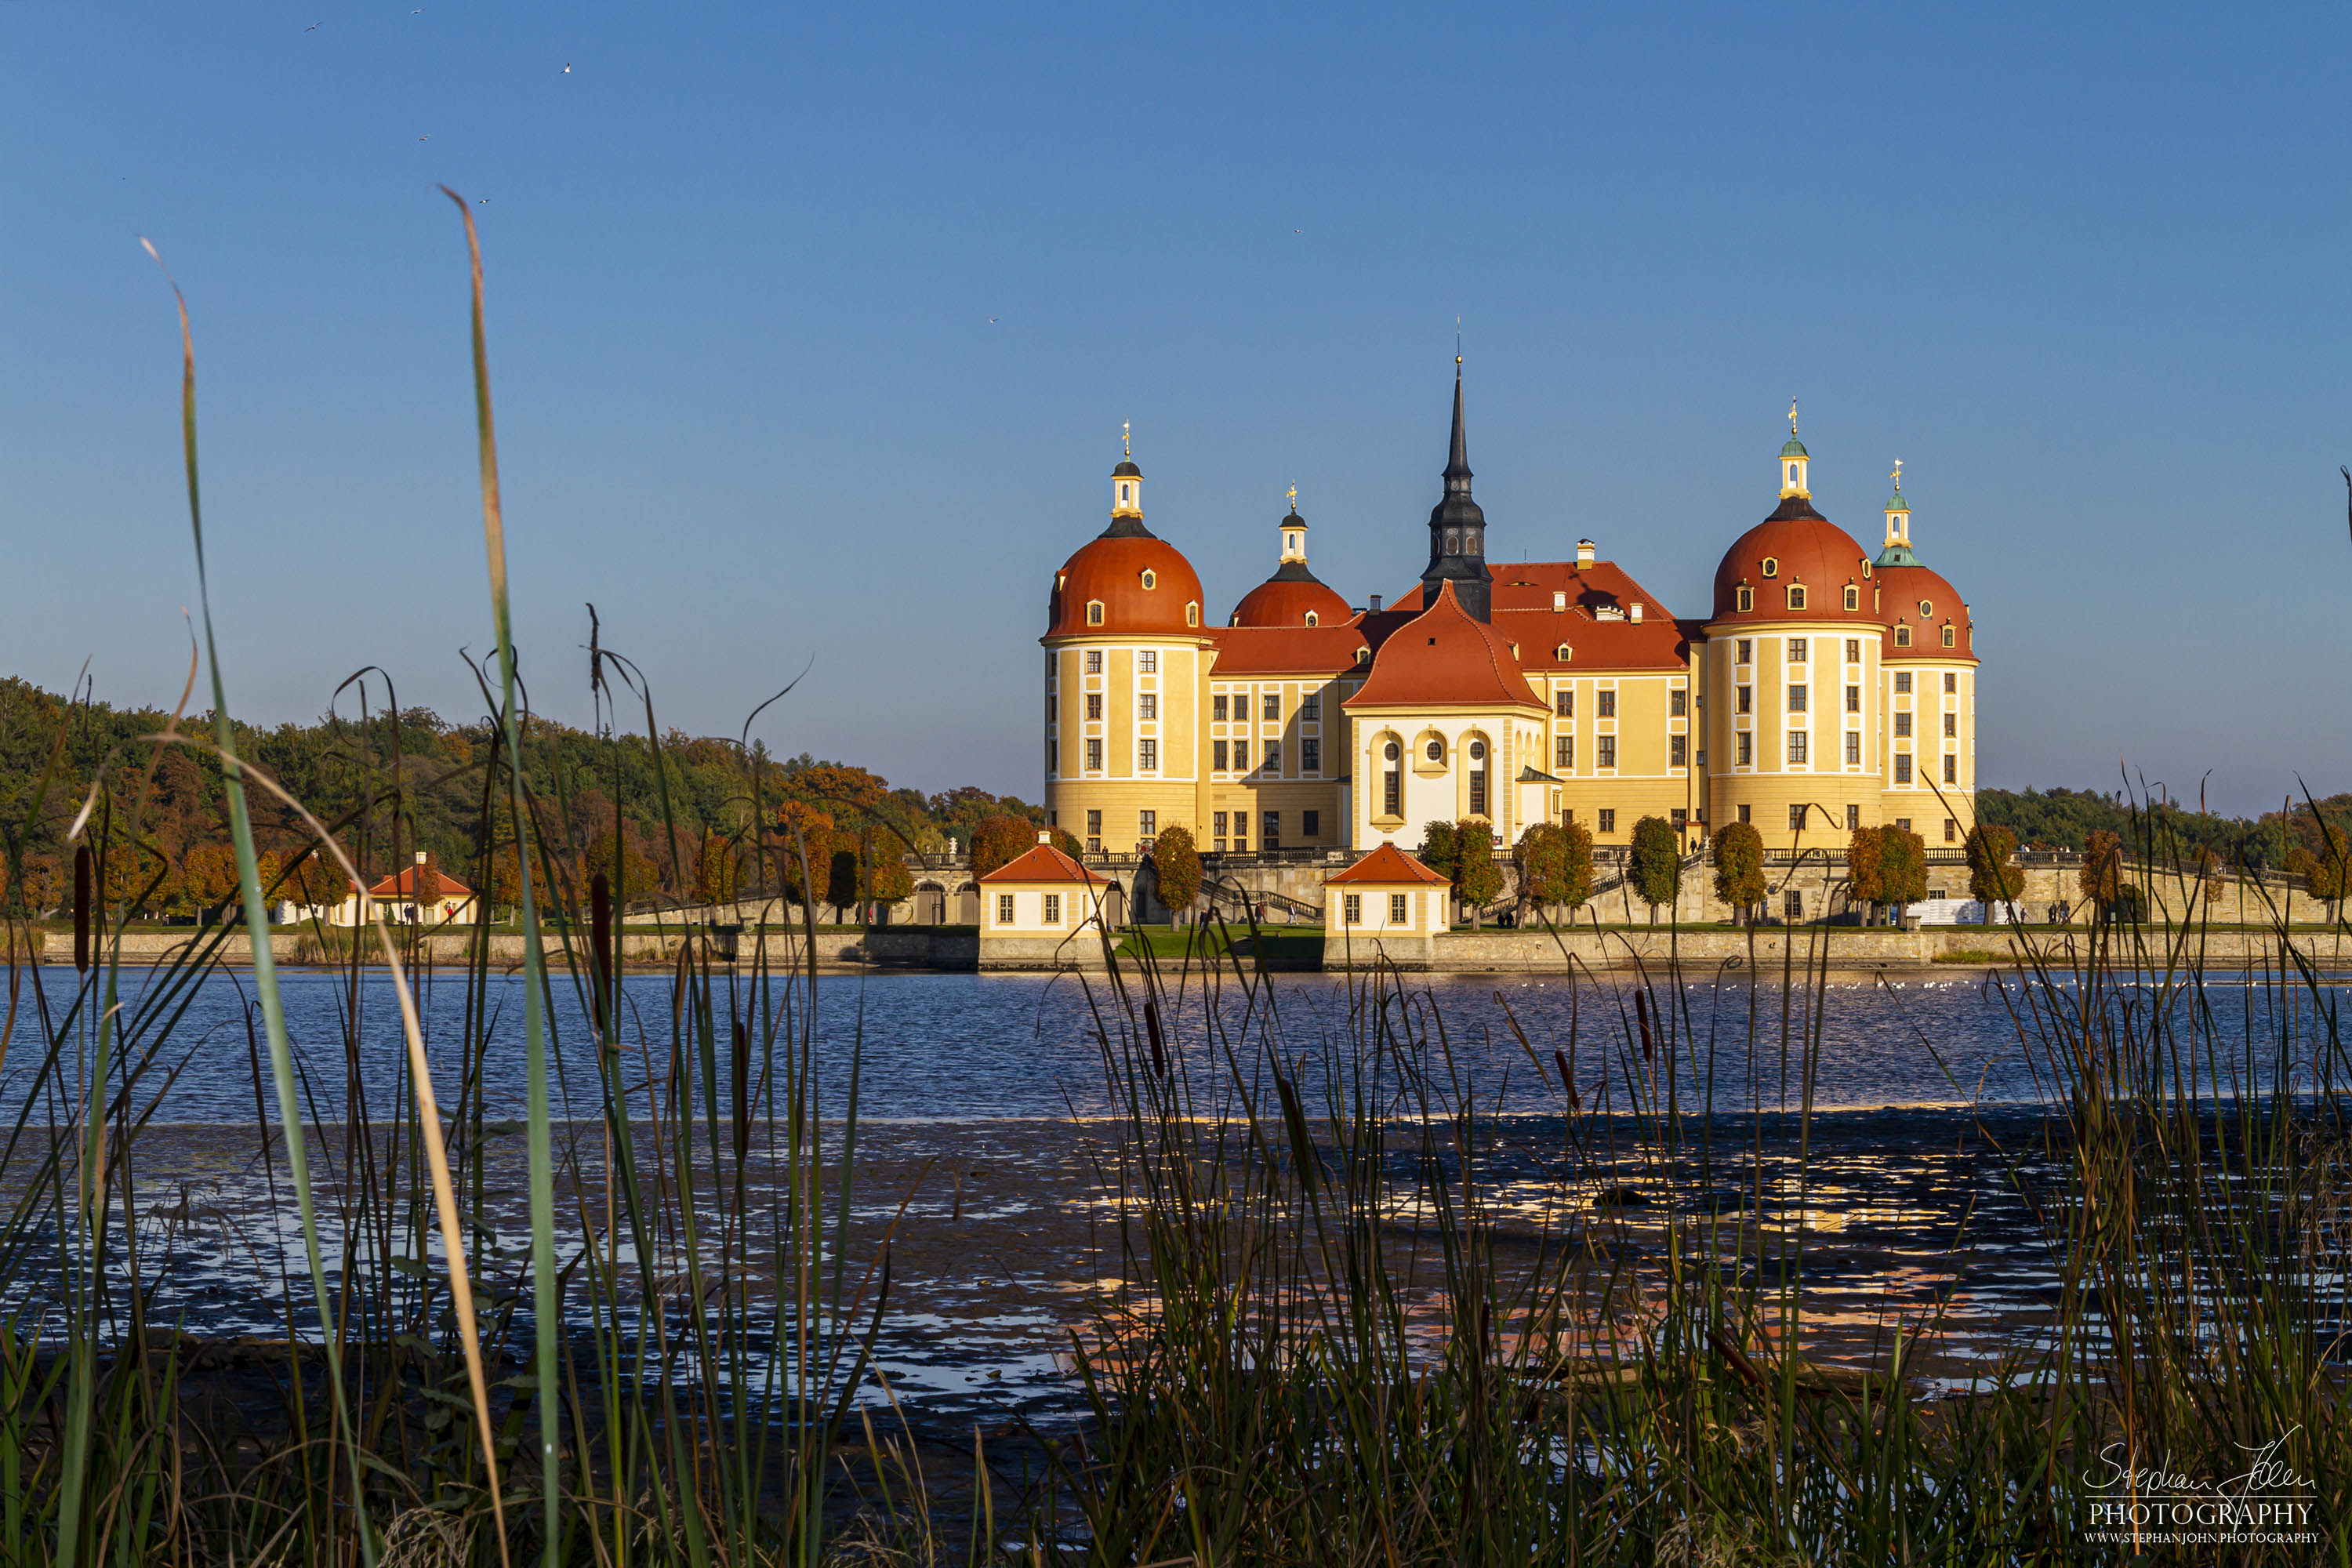 <p>Das Schloss Moritzburg liegt in der gleichnamigen Gemeinde Moritzburg nahe Dresden. Das auf ein Jagdhaus des 16. Jahrhunderts zurückgehende Jagdschloss erhielt seine heutige Gestalt im 18. Jahrhundert unter August dem Starken.</p>